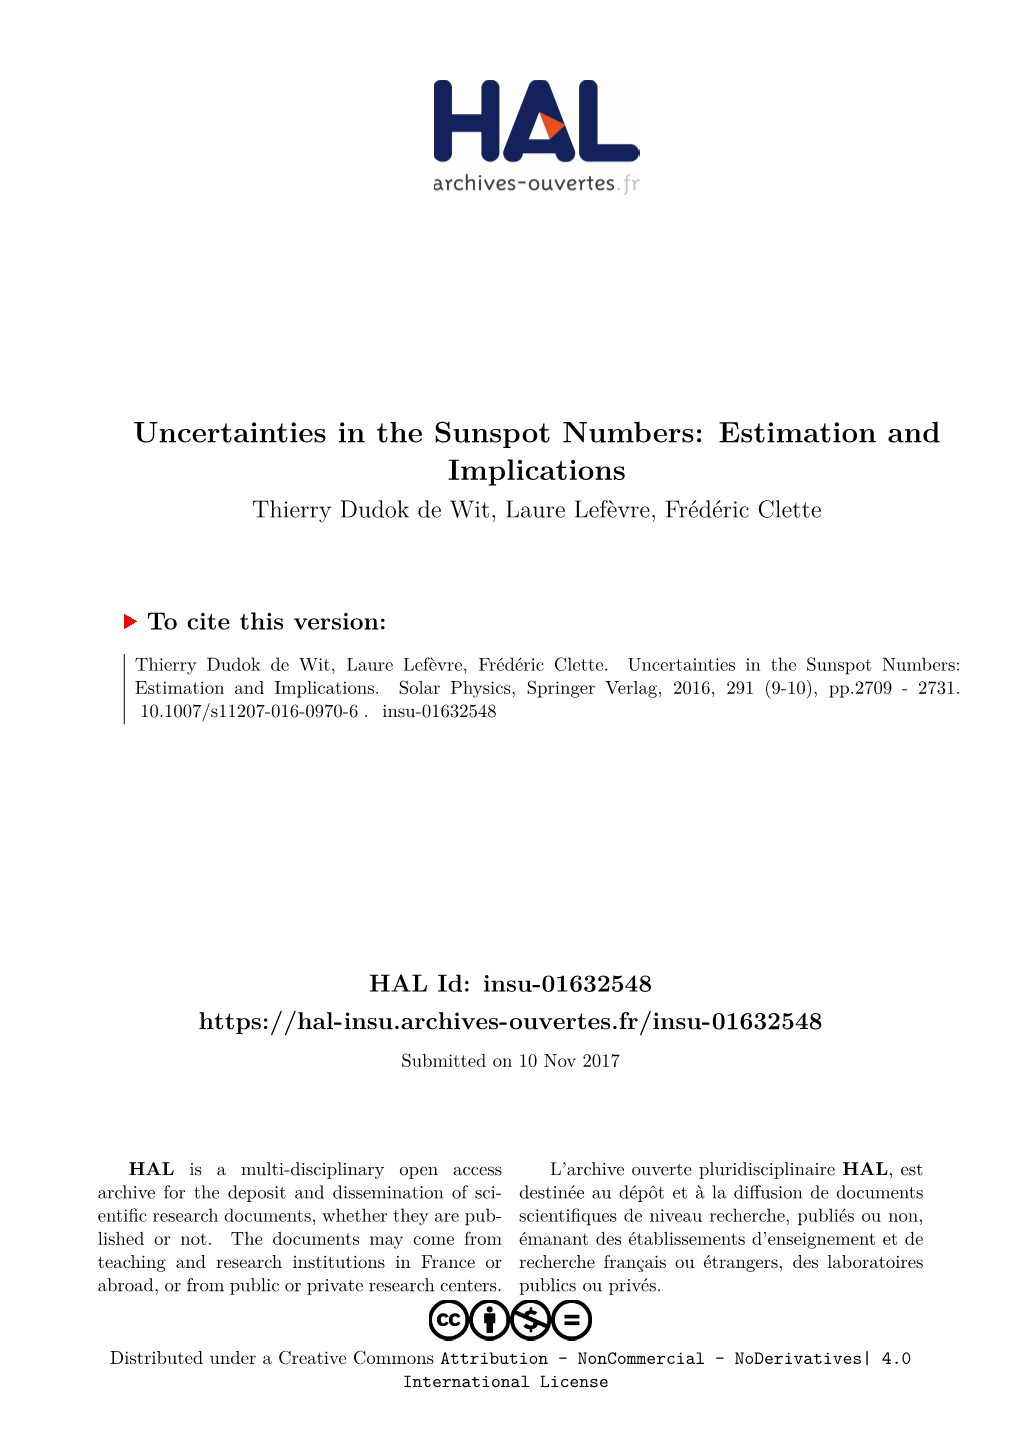 Uncertainties in the Sunspot Numbers: Estimation and Implications Thierry Dudok De Wit, Laure Lefèvre, Frédéric Clette